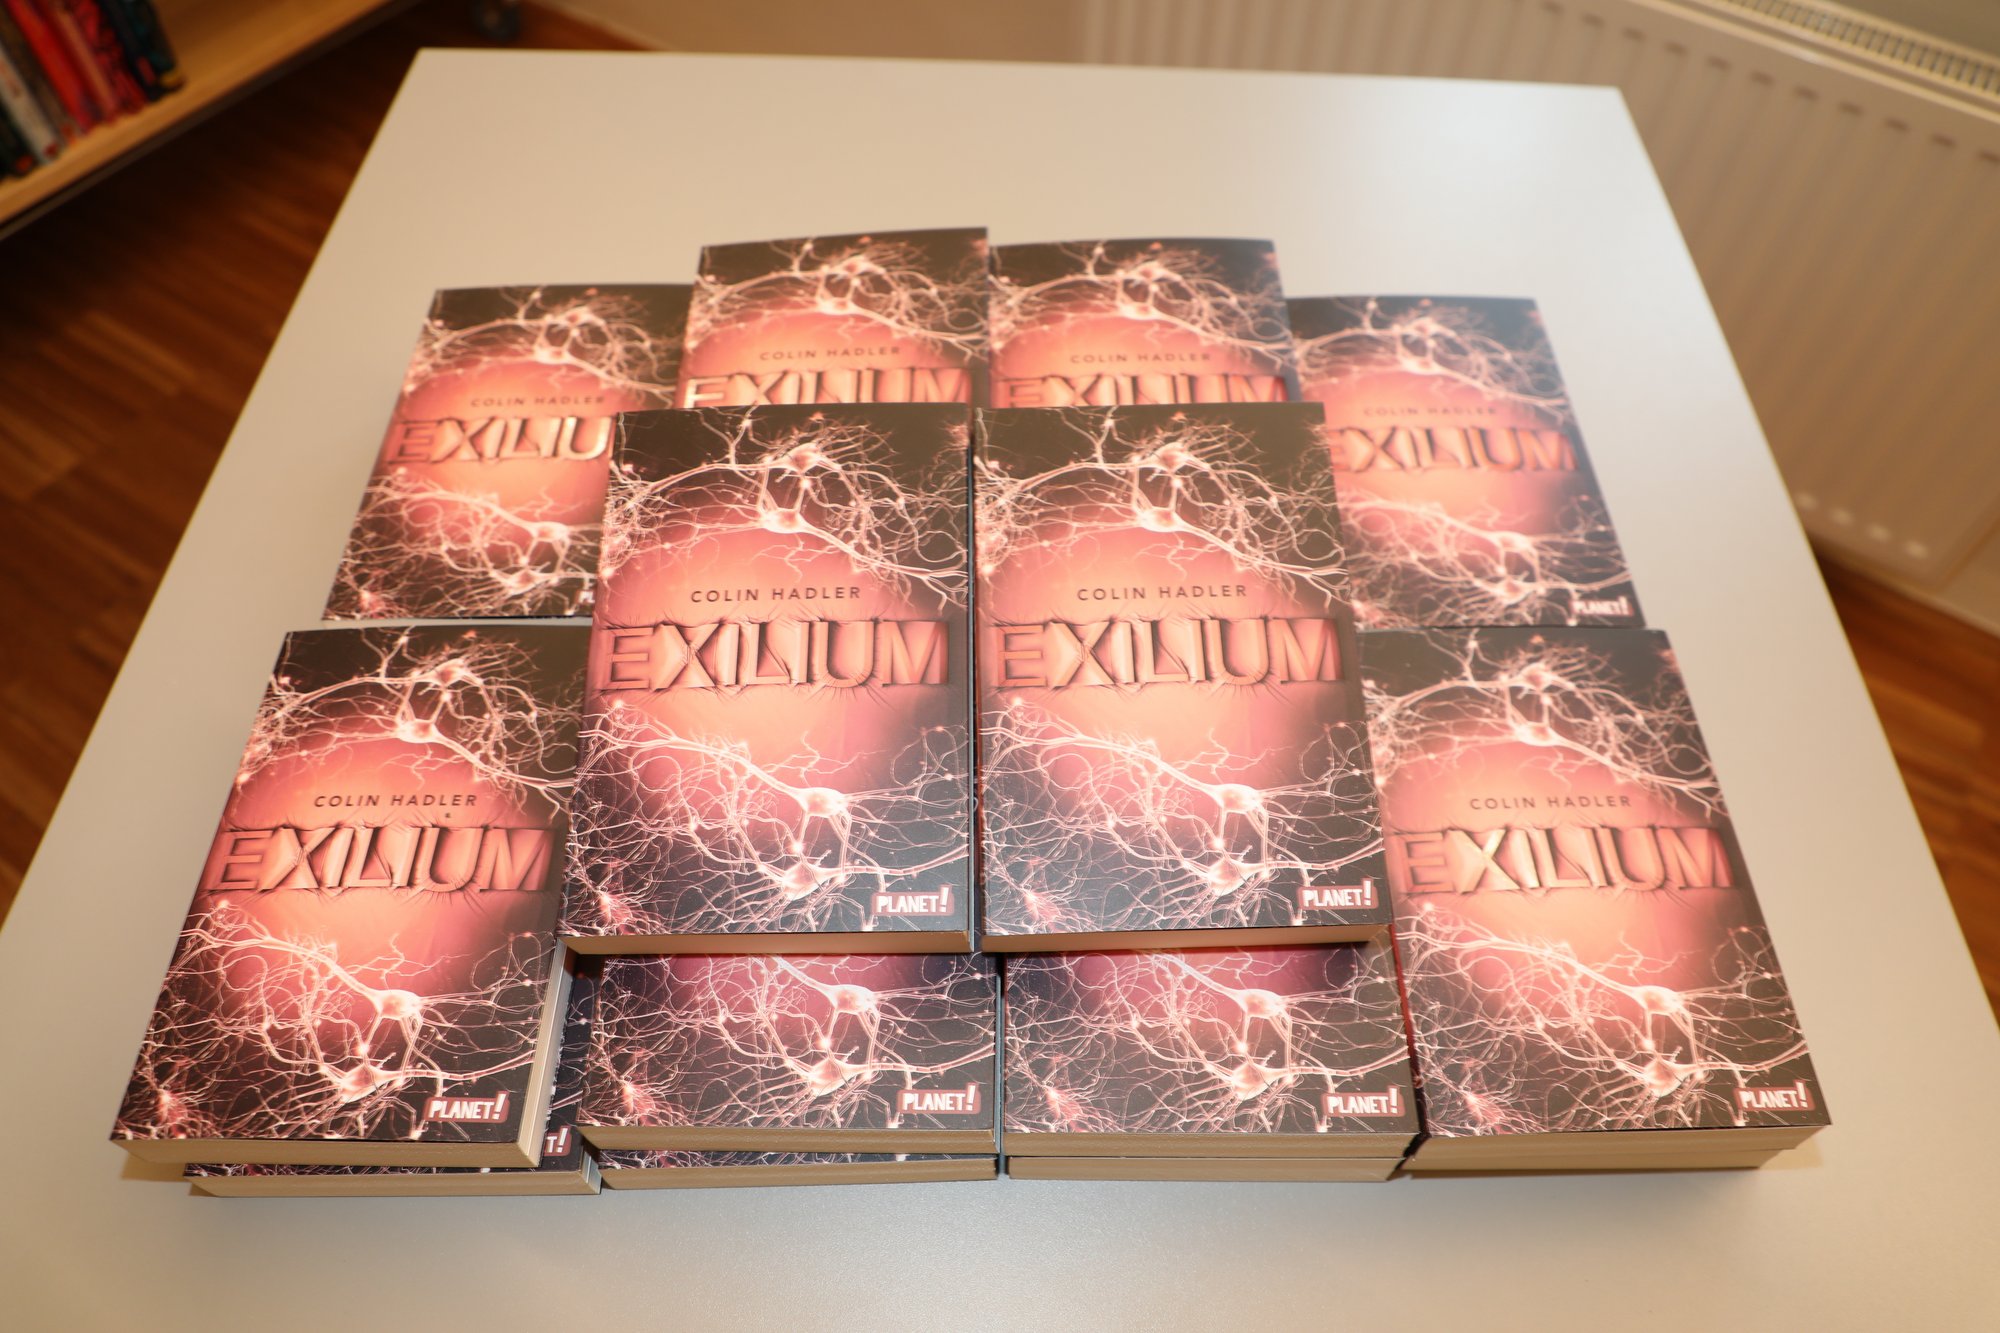 Büchertisch mit dem Roman "Exilium" von Colin Hadler